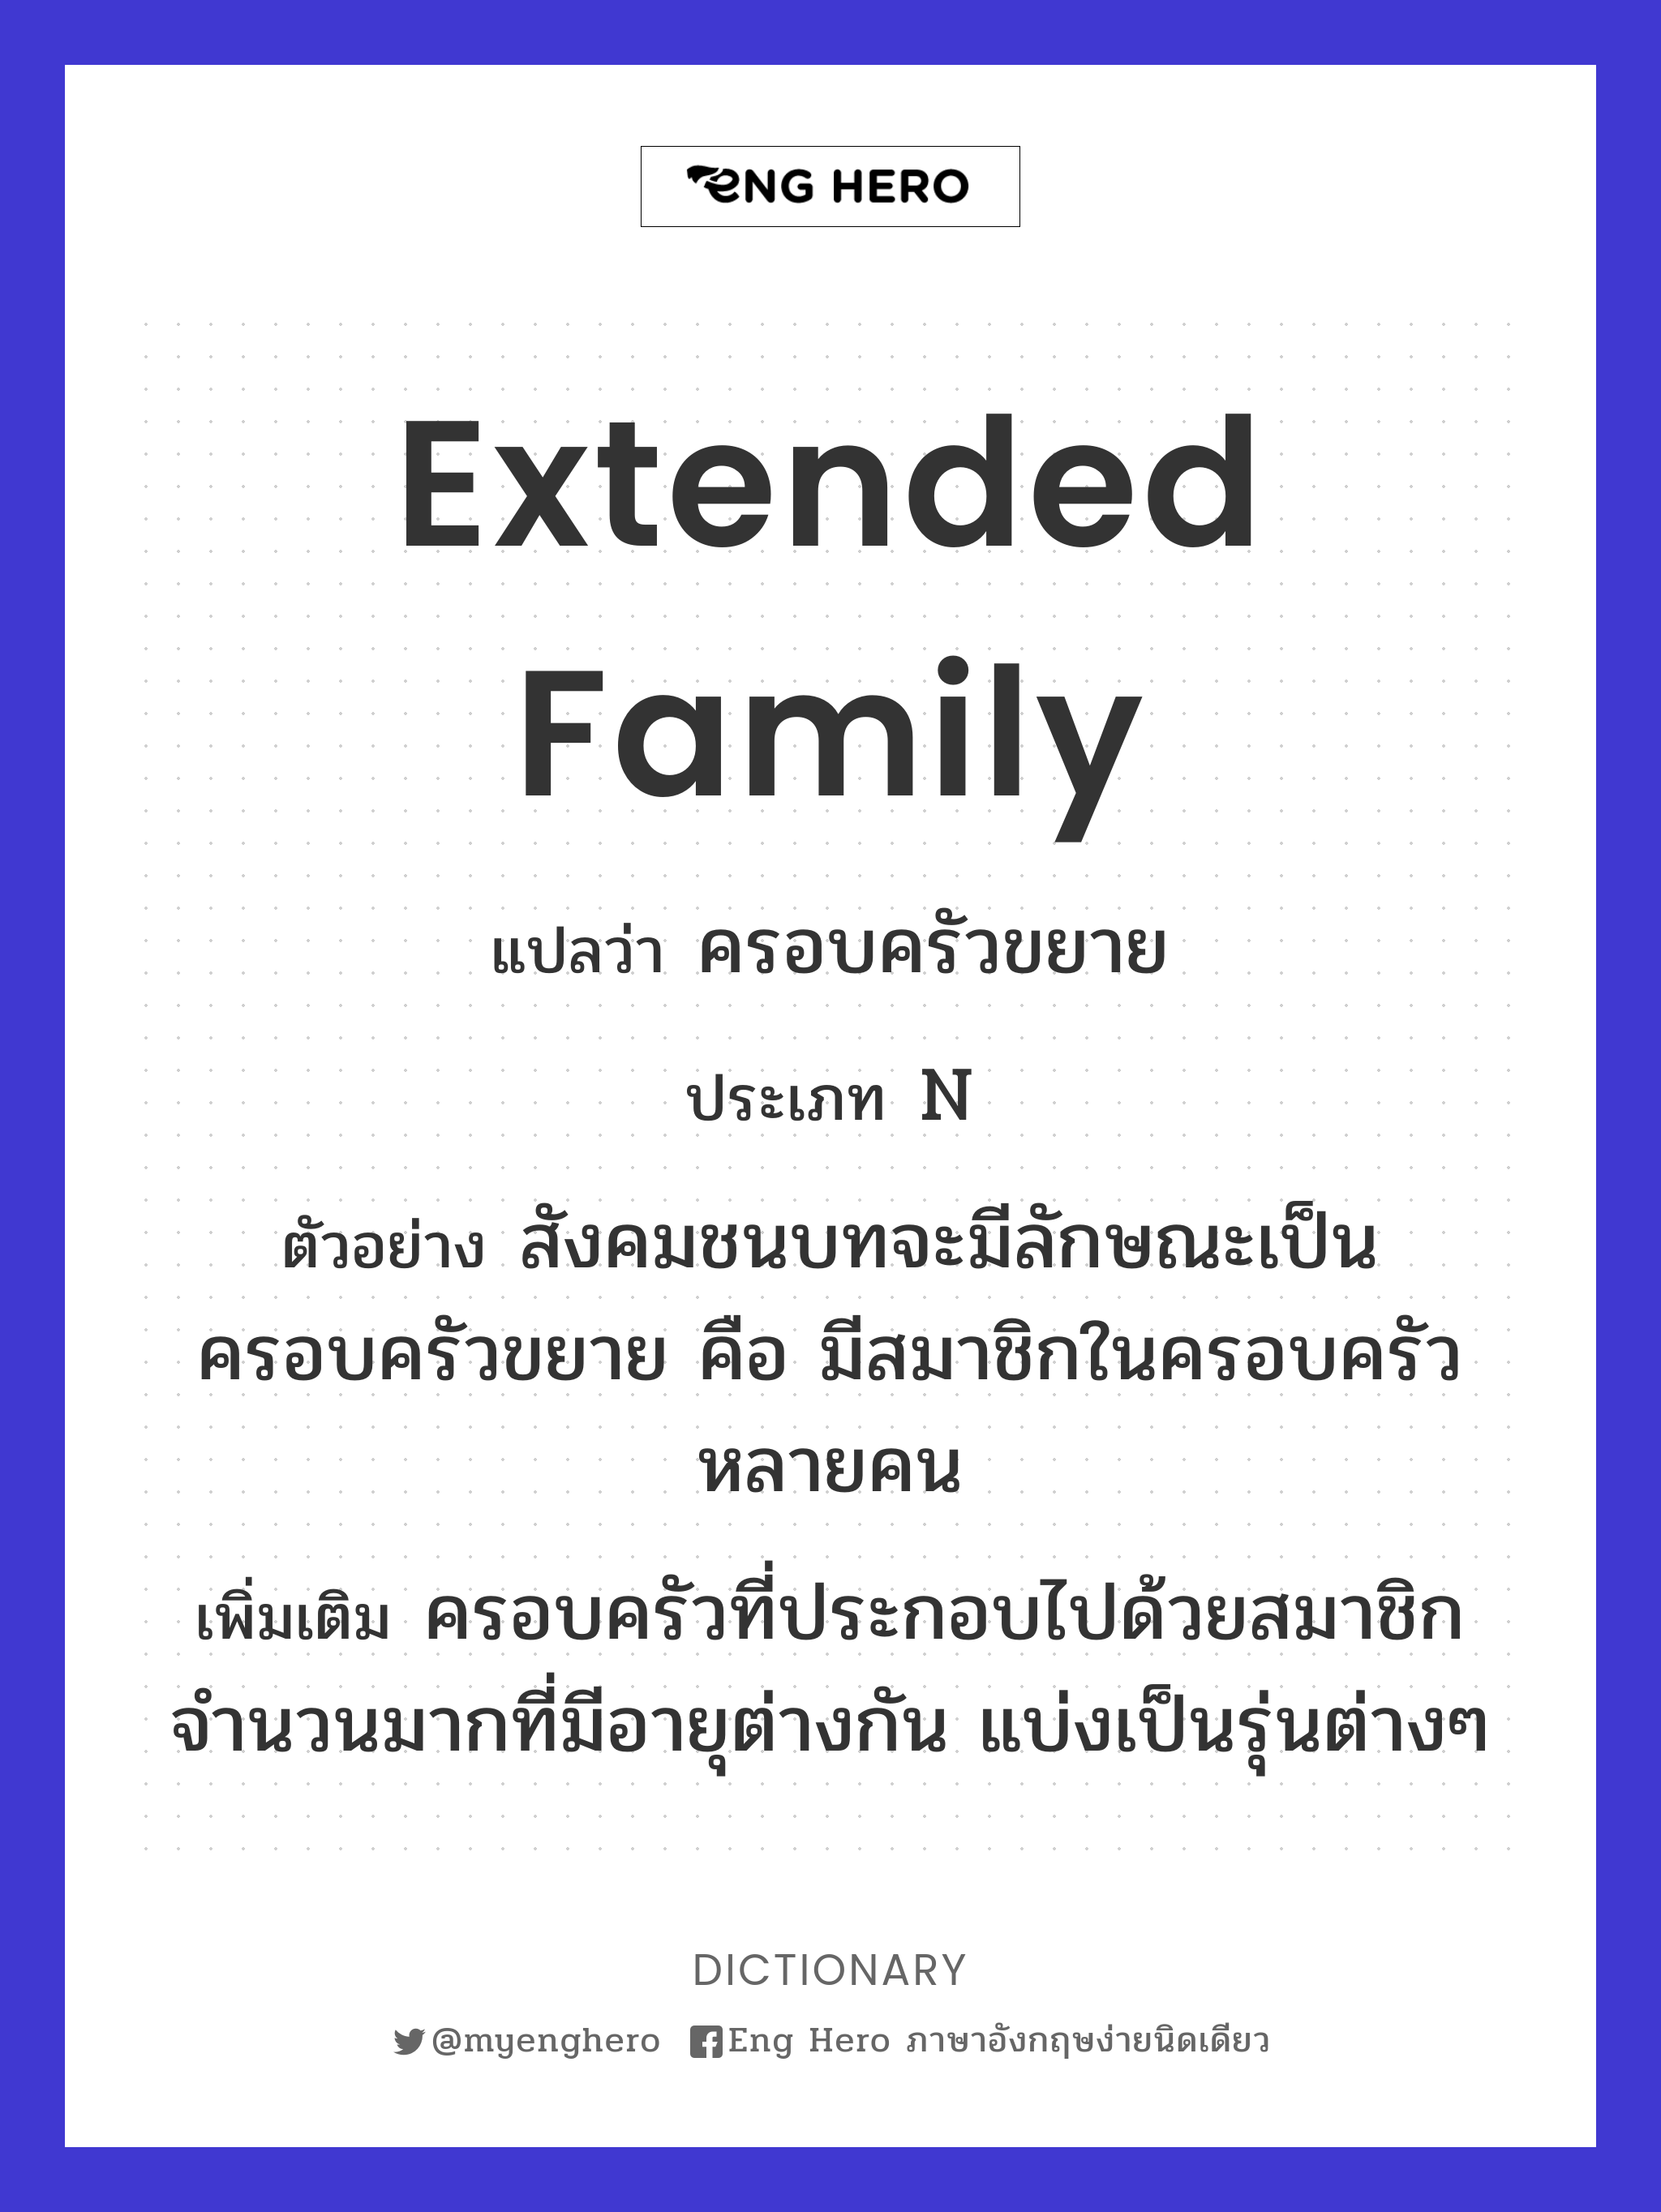 Extended Family แปลว่า ครอบครัวขยาย | Eng Hero เรียนภาษาอังกฤษ ออนไลน์ ฟรี